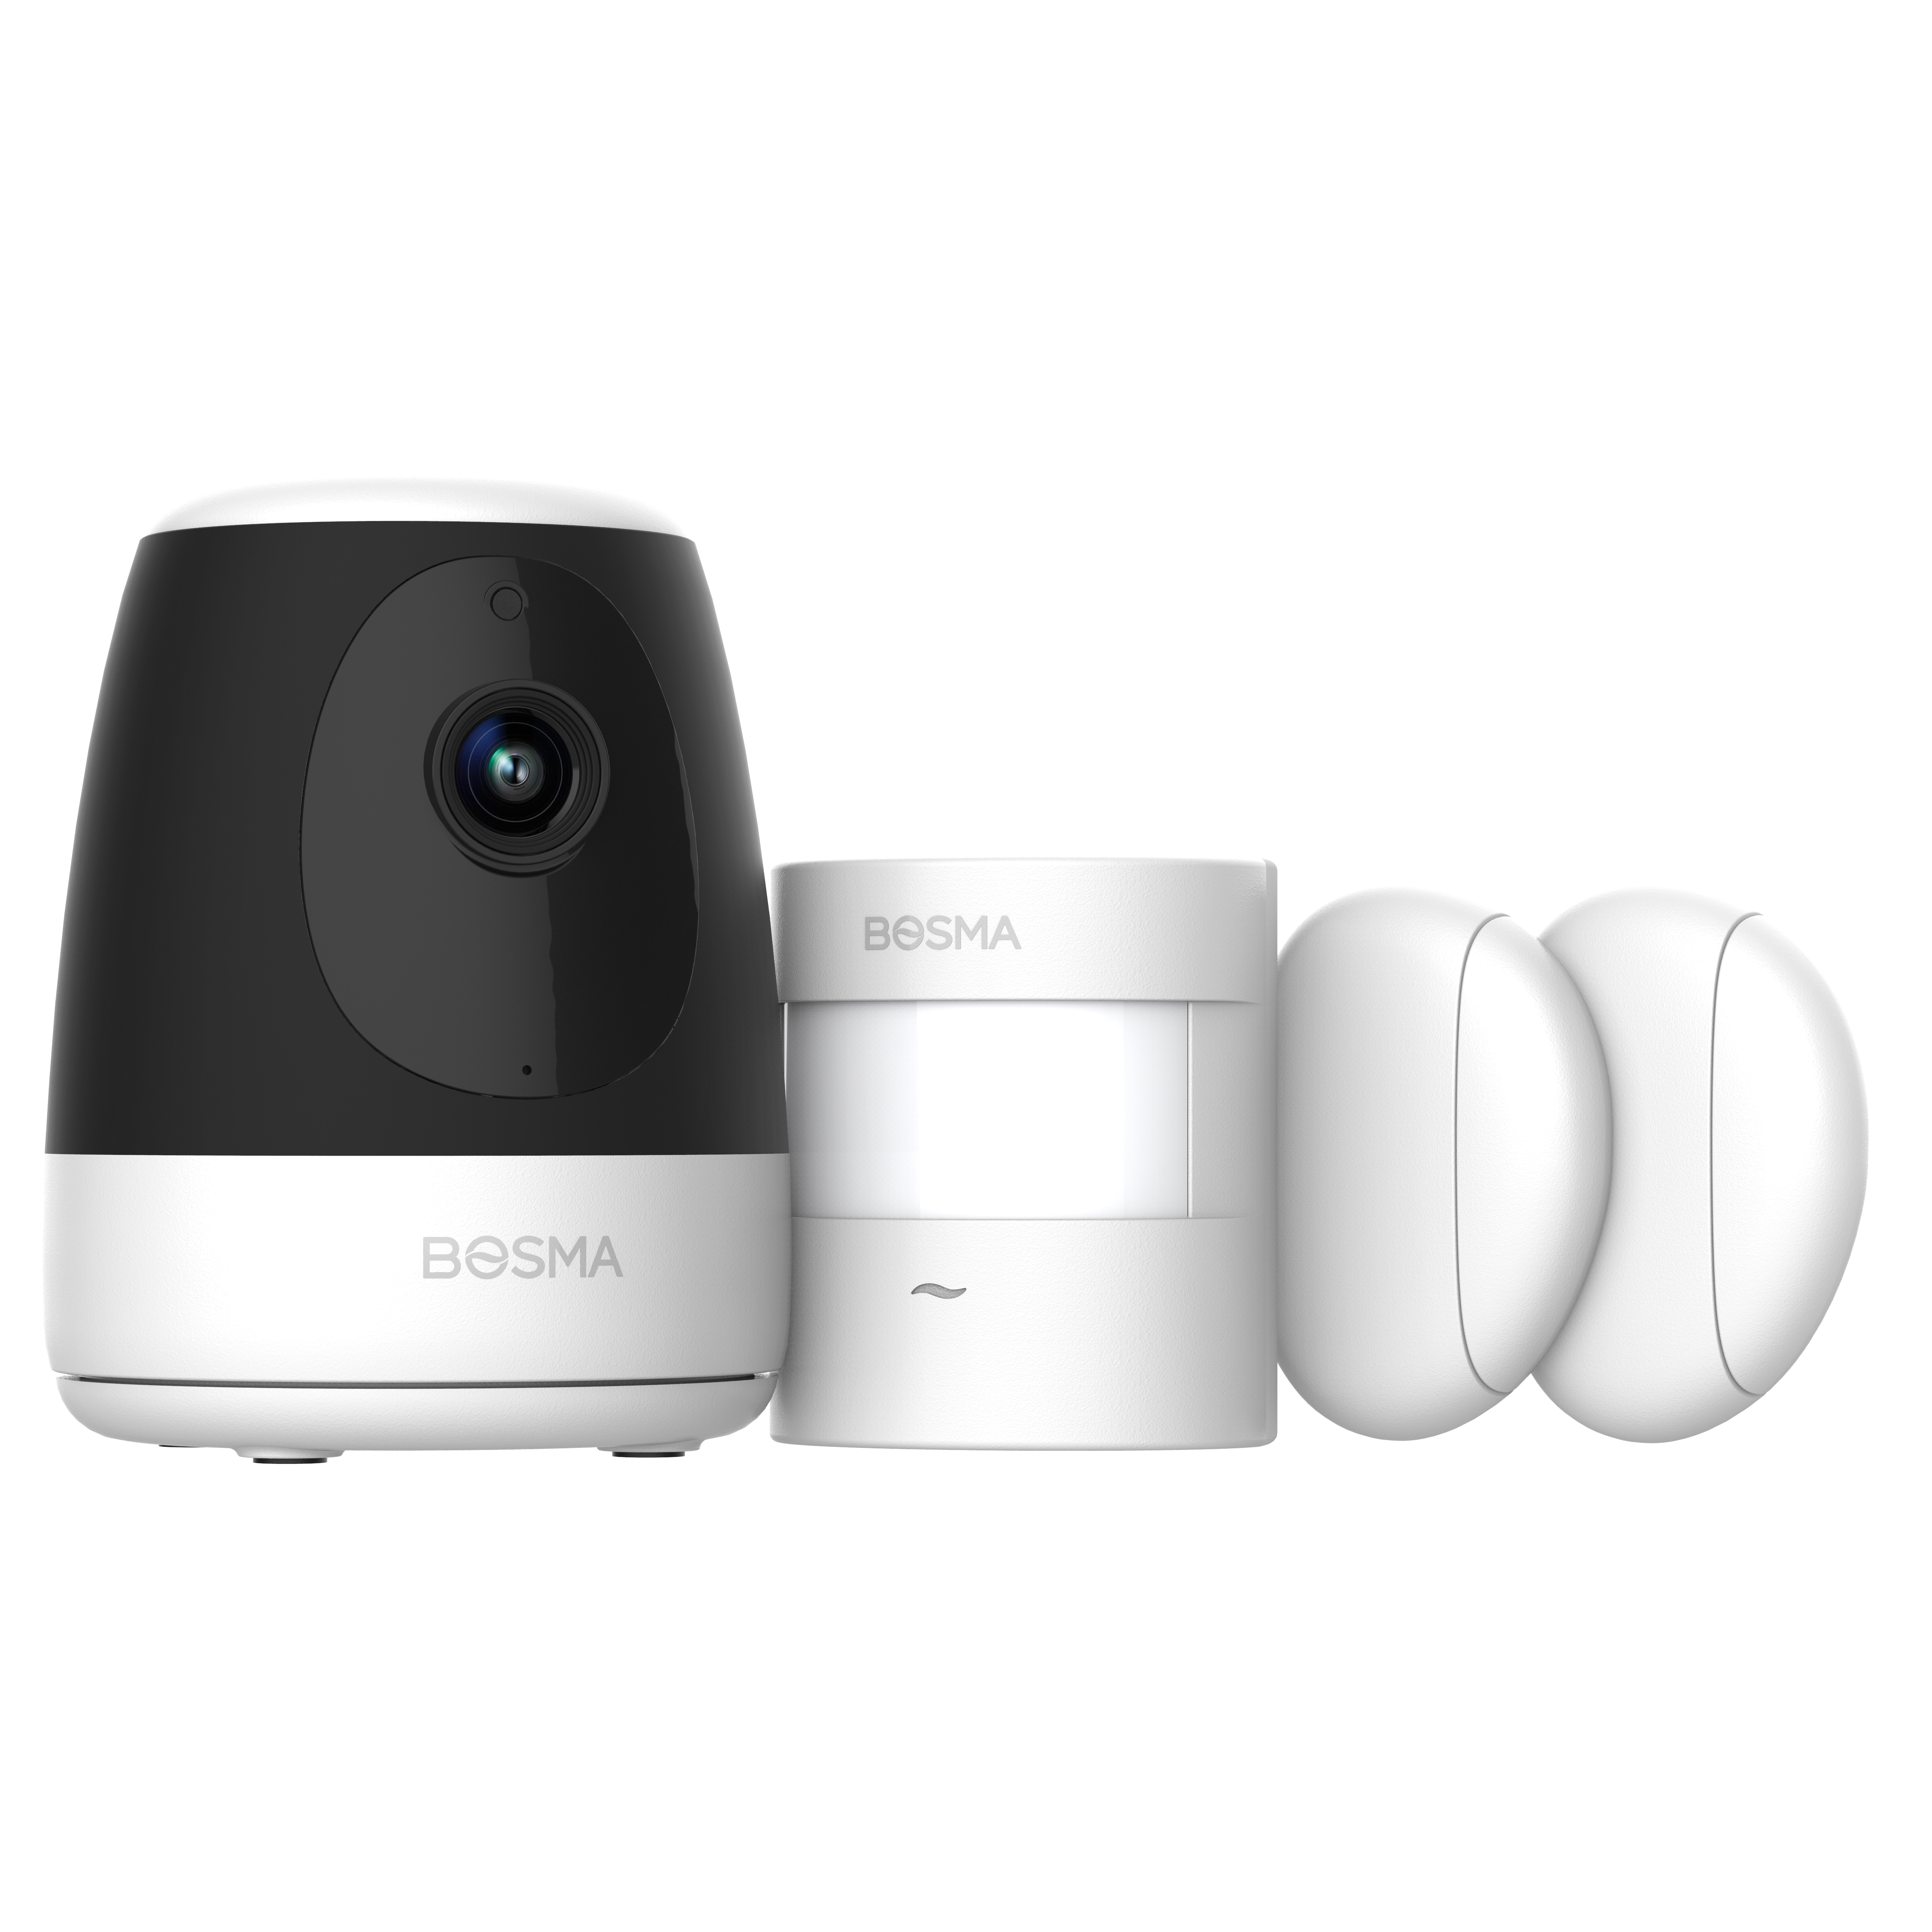 智能家居智能网络摄像机套装双向语音对讲红外夜视本地存储视频